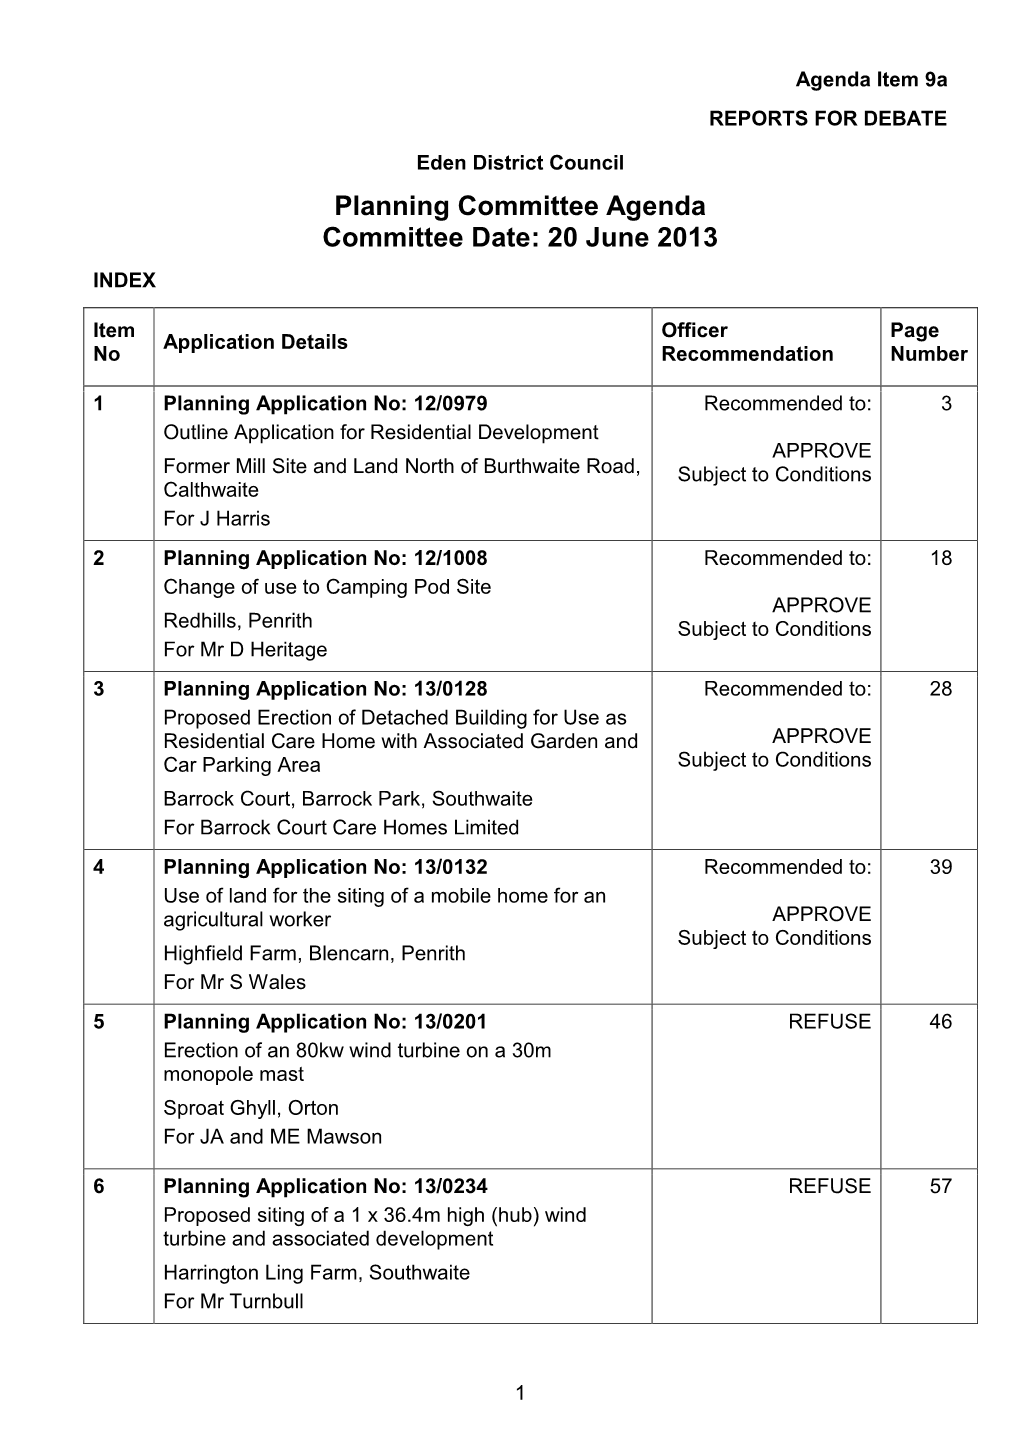 Planning Committee Agenda 20 June 2013